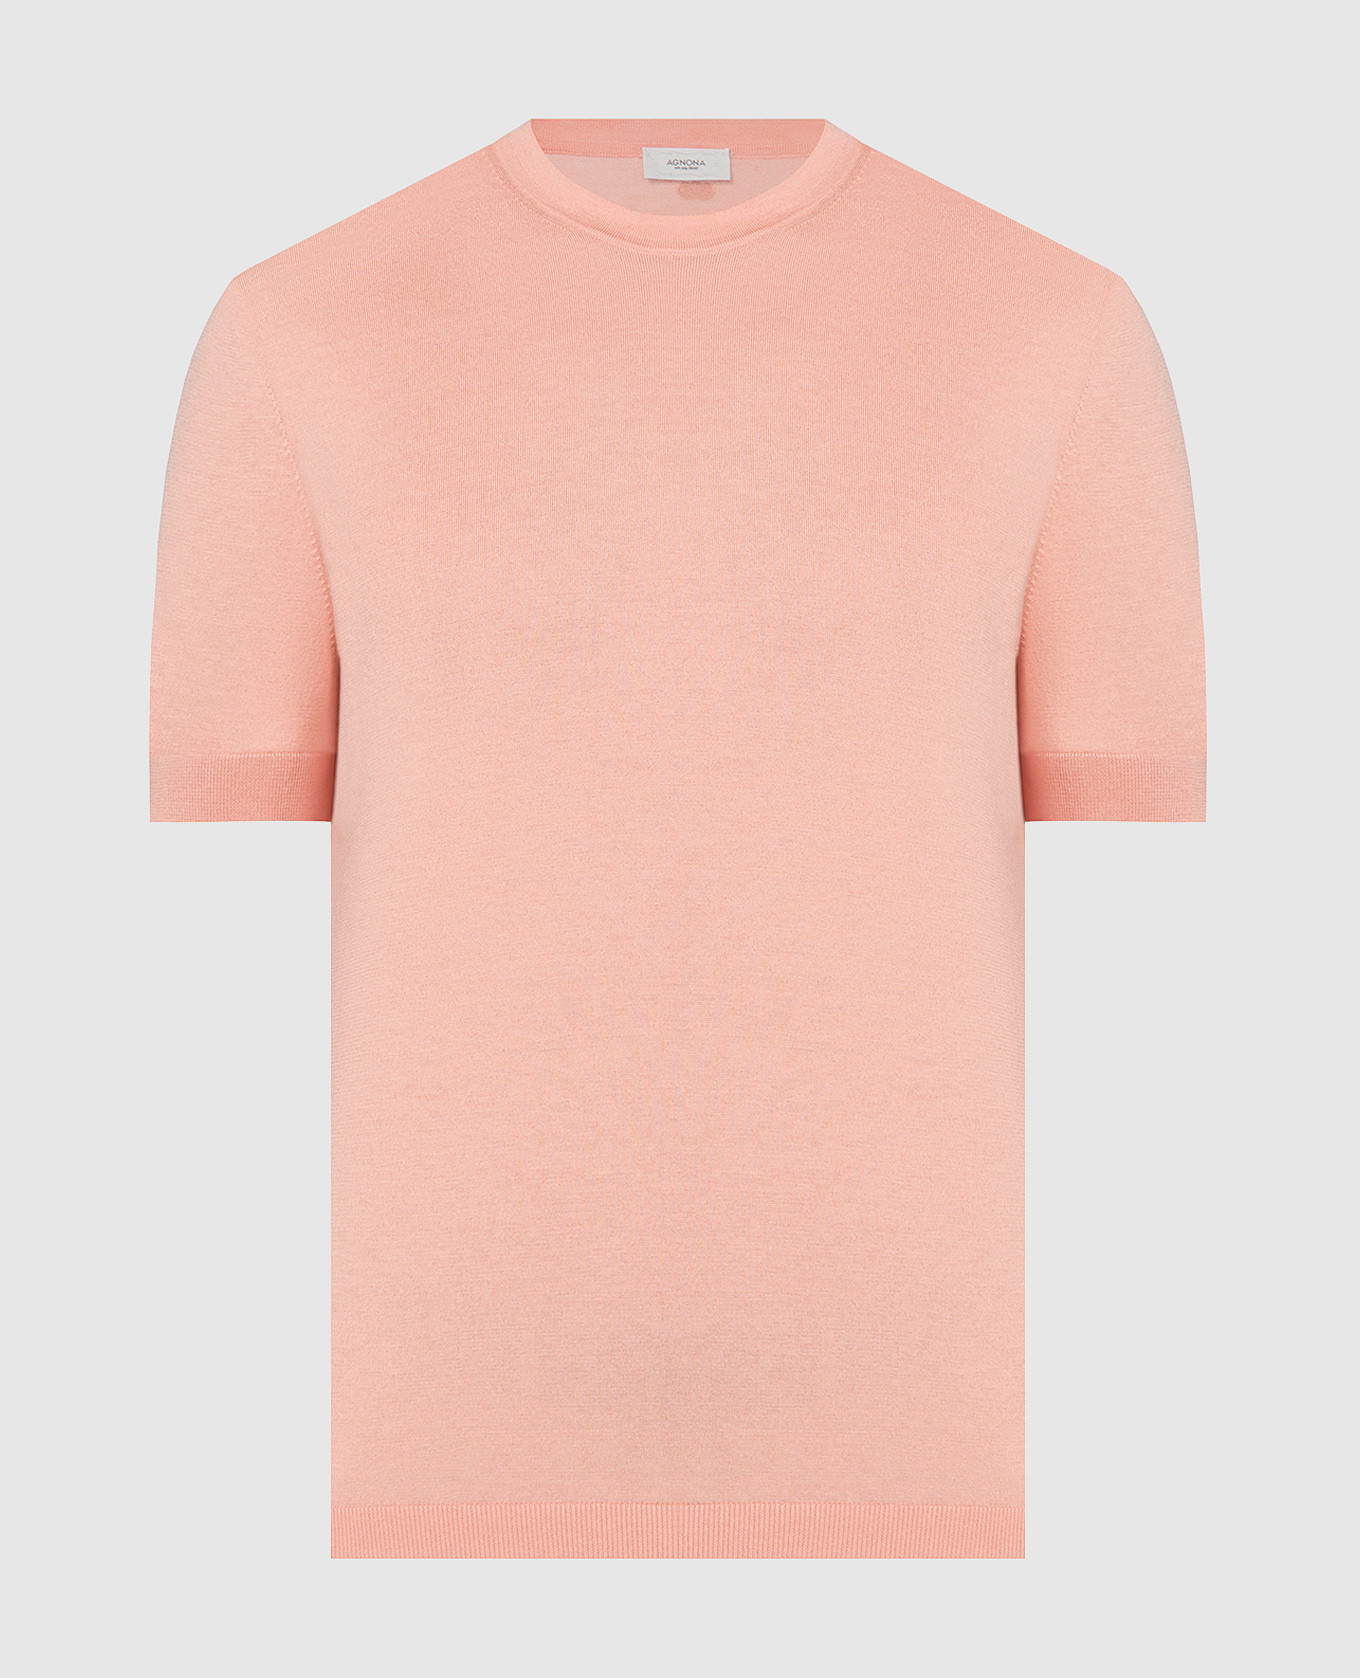 Orange T-shirt with silk